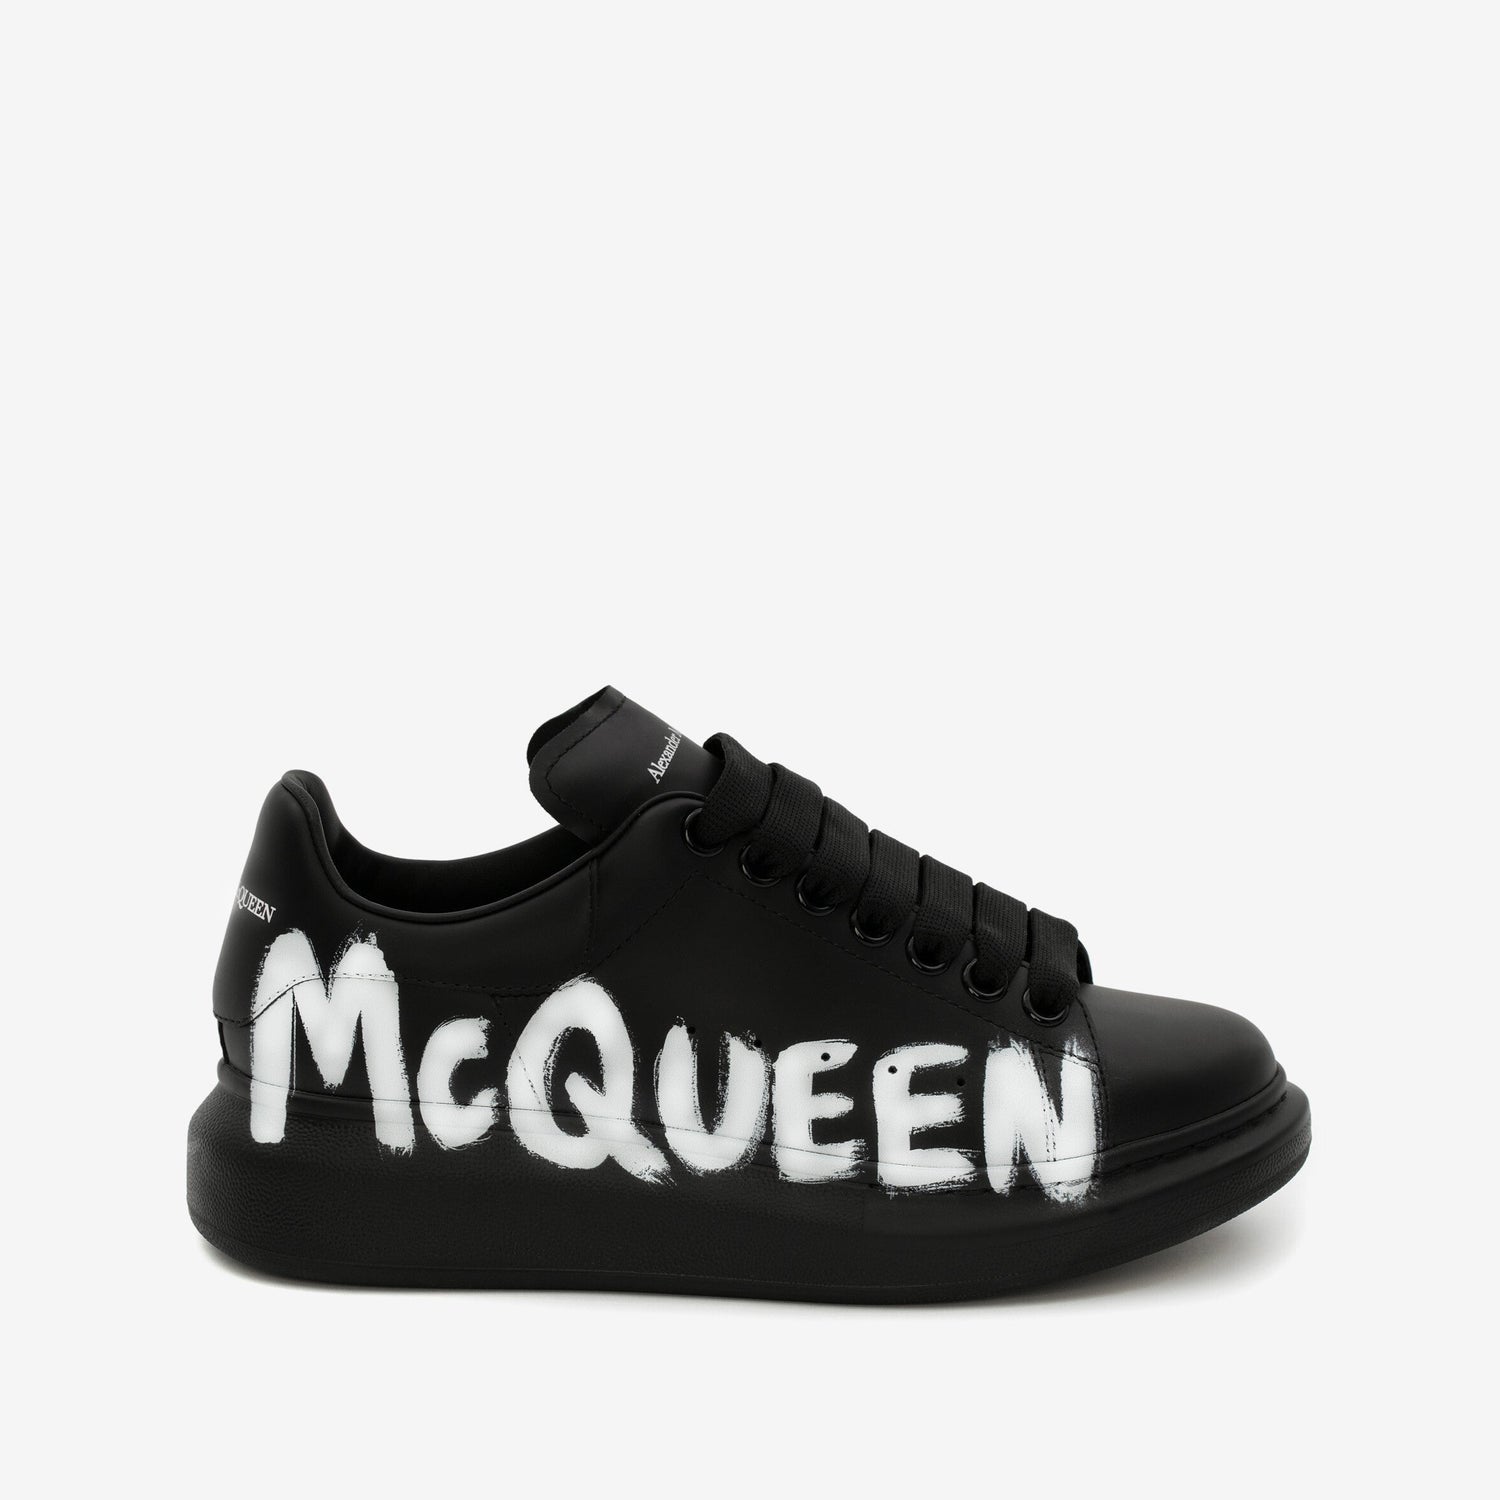 ALEXANDER McQUEEN - Sneaker Oversize McQueen Graffiti in Nero/bianco - IperShopNY